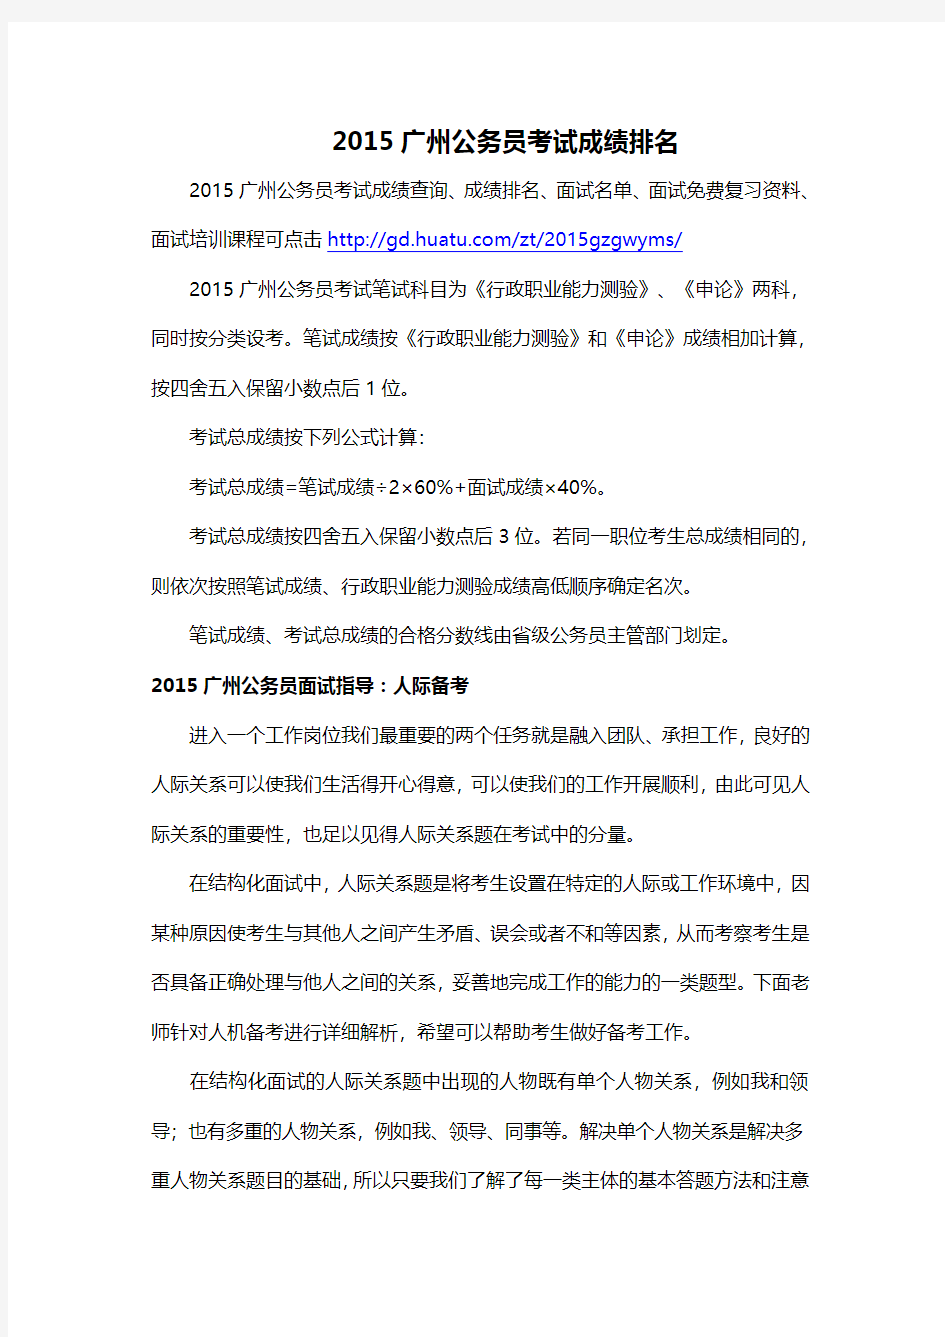 2015广州公务员考试成绩排名